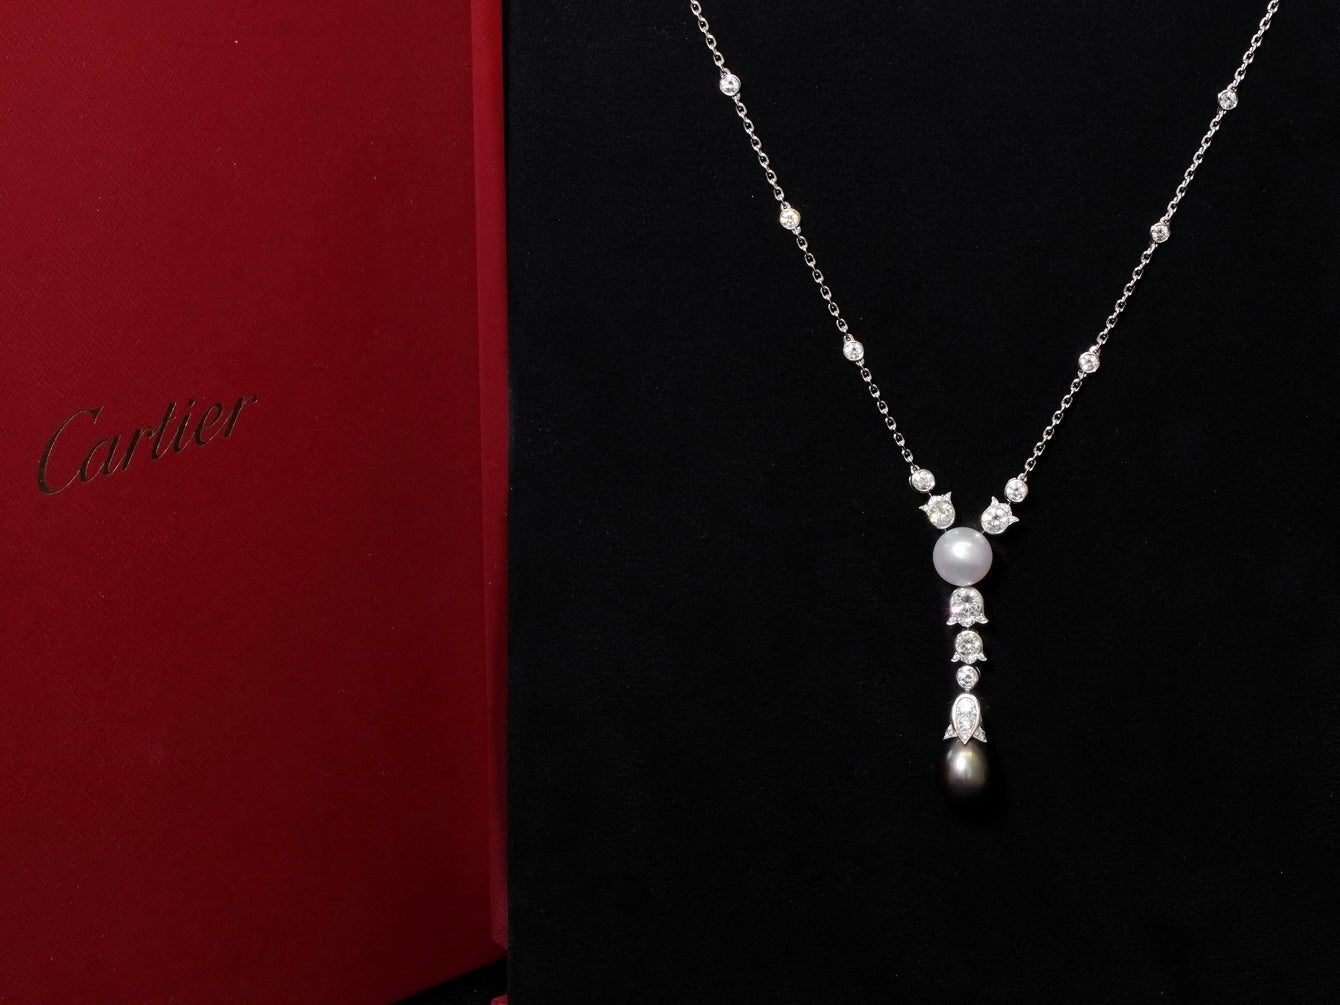 Cartier Collier Necklace, 18kt Weissgold mit 47 Diamanten und Tahiti + Südseeperle - LUXUHRIA